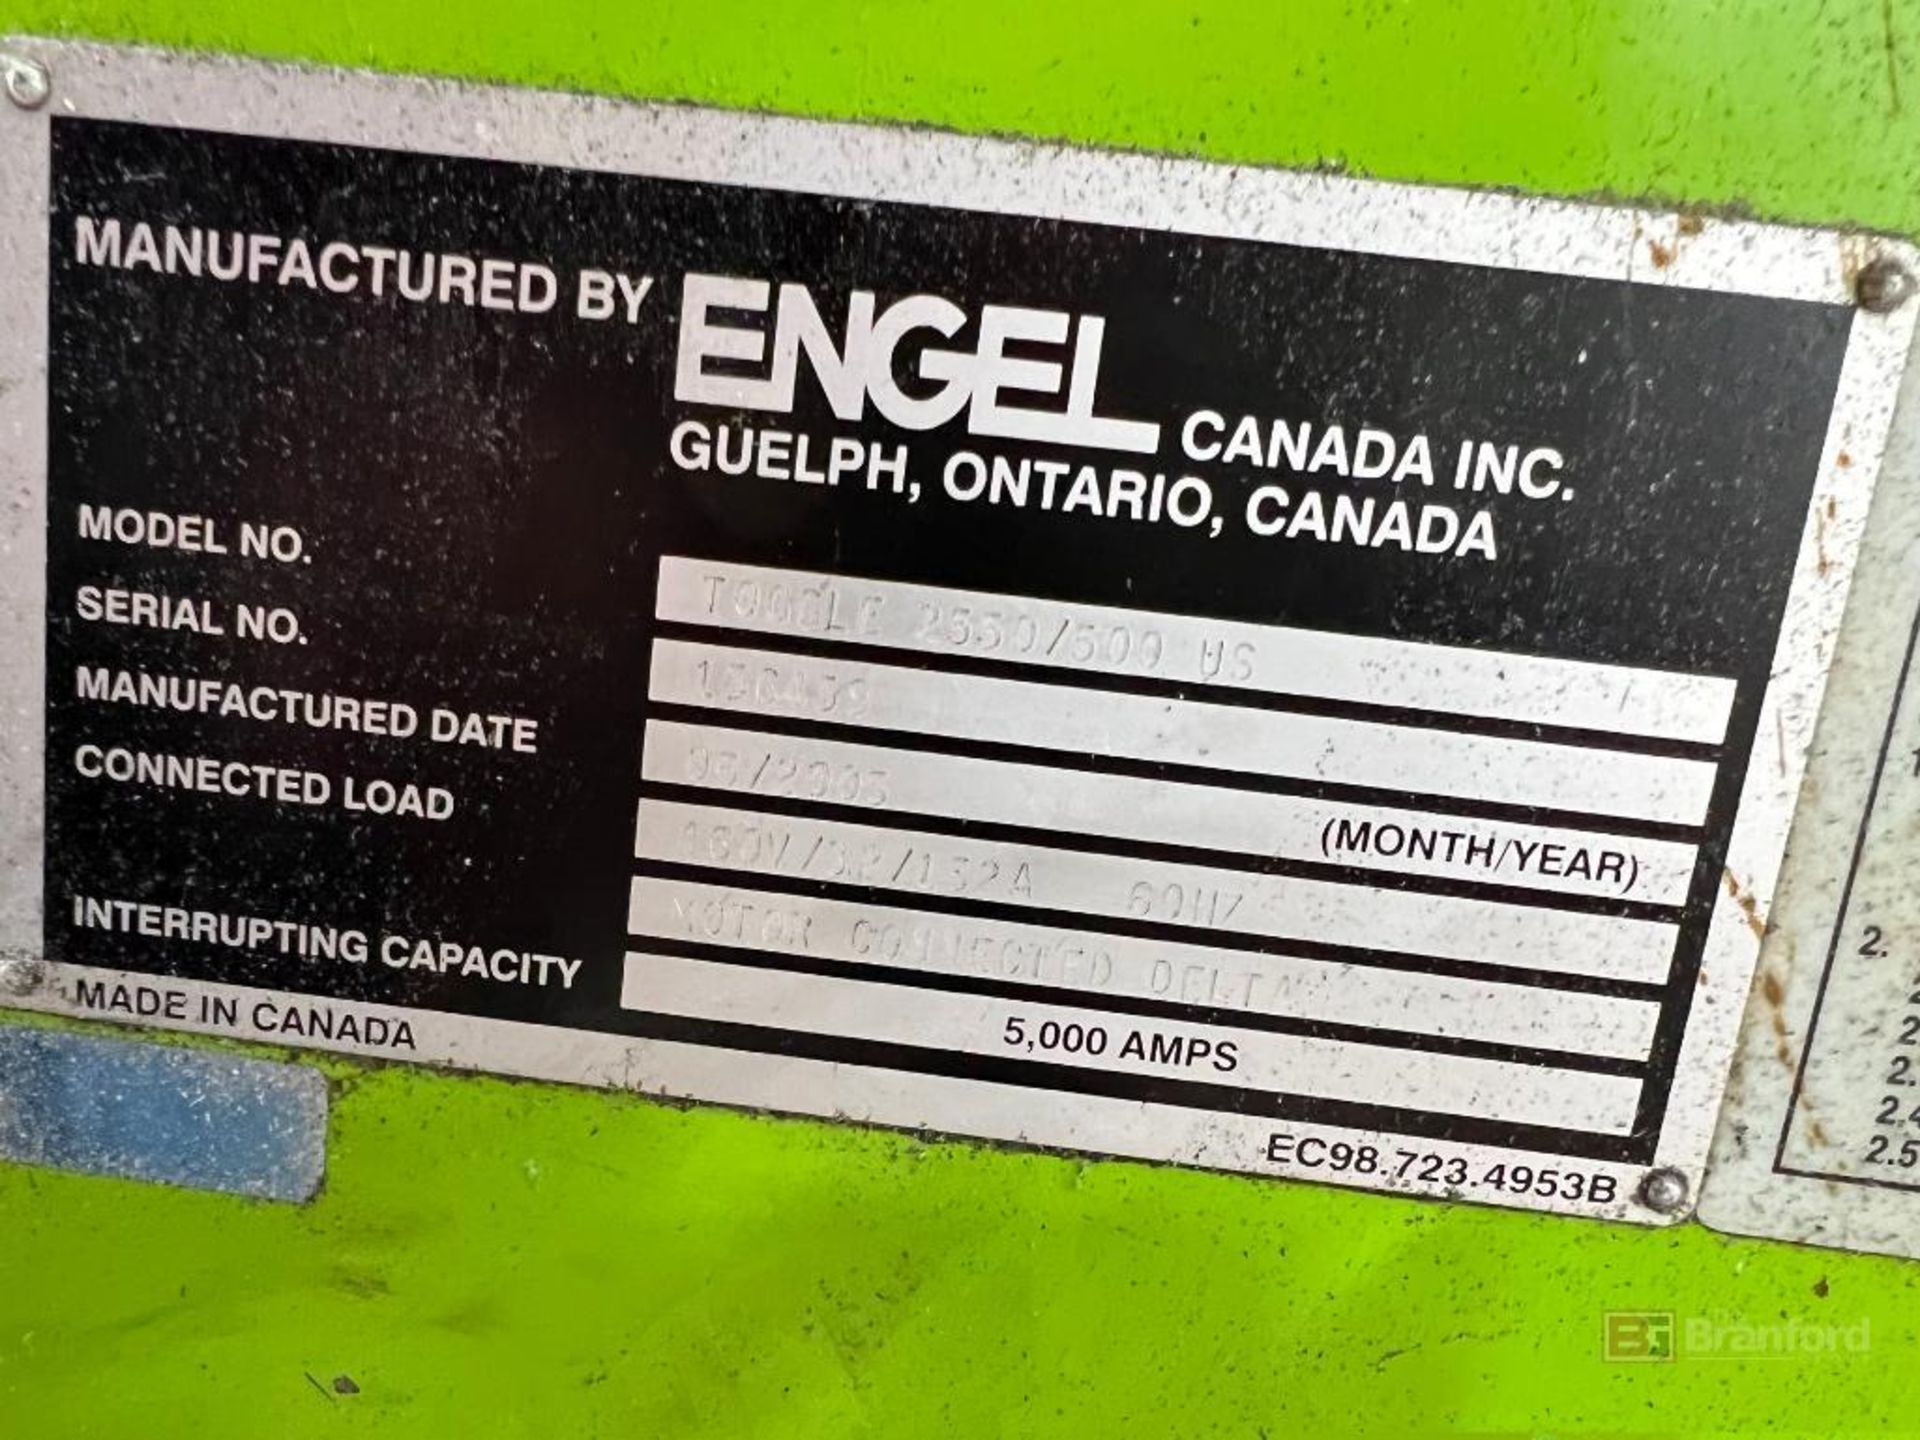 Engel TG 2550/500 US Injection Molding Machine - Image 13 of 13